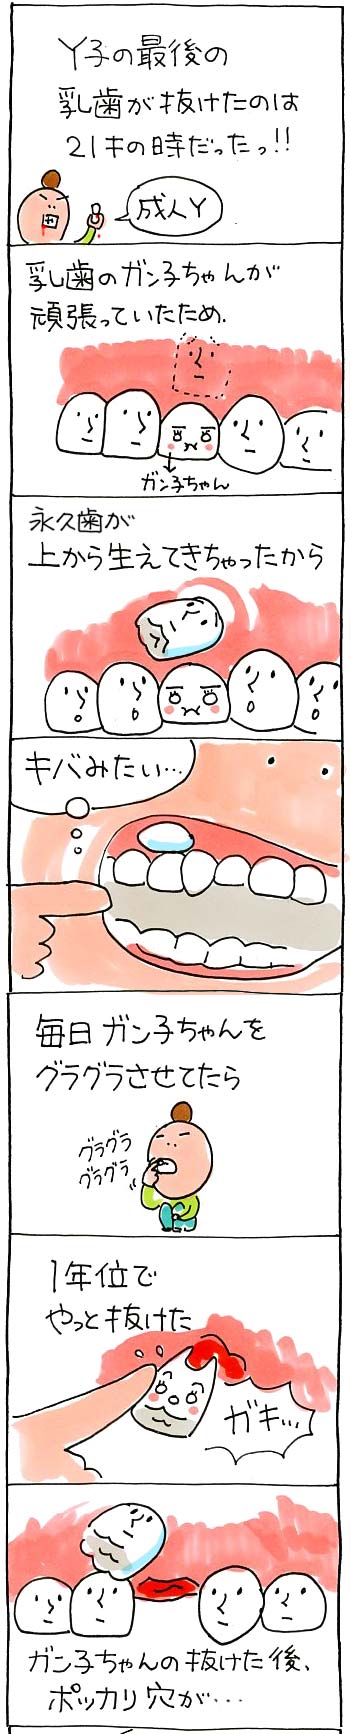 歯の話01